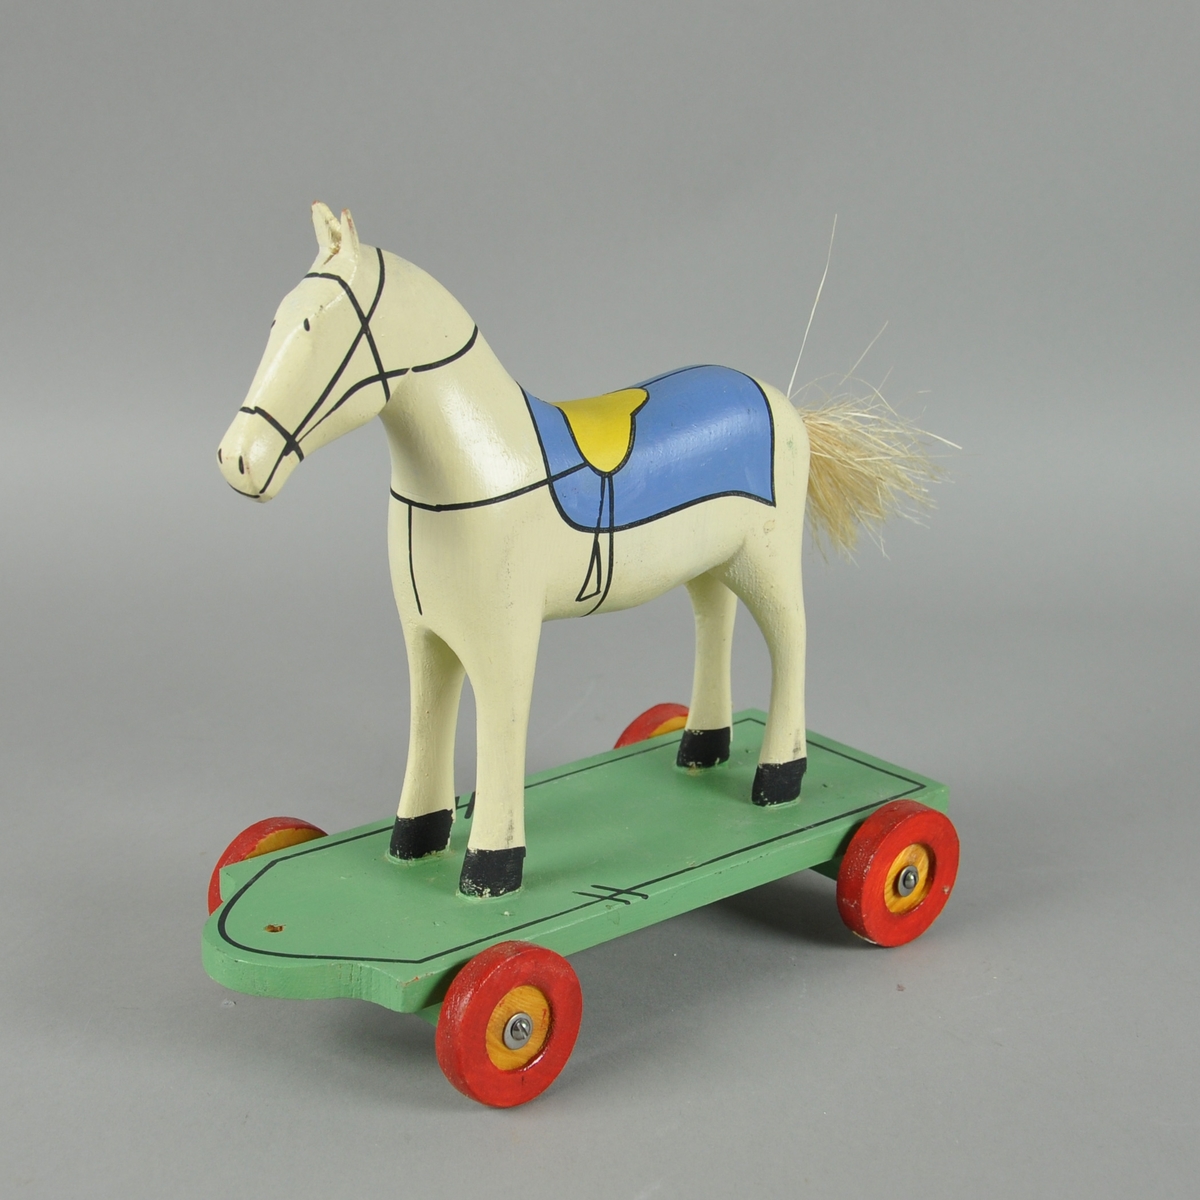 Hvit trehest med påmalt sadel, montert på grønt trebrett med fire hjul. Hesten har hale av bast.